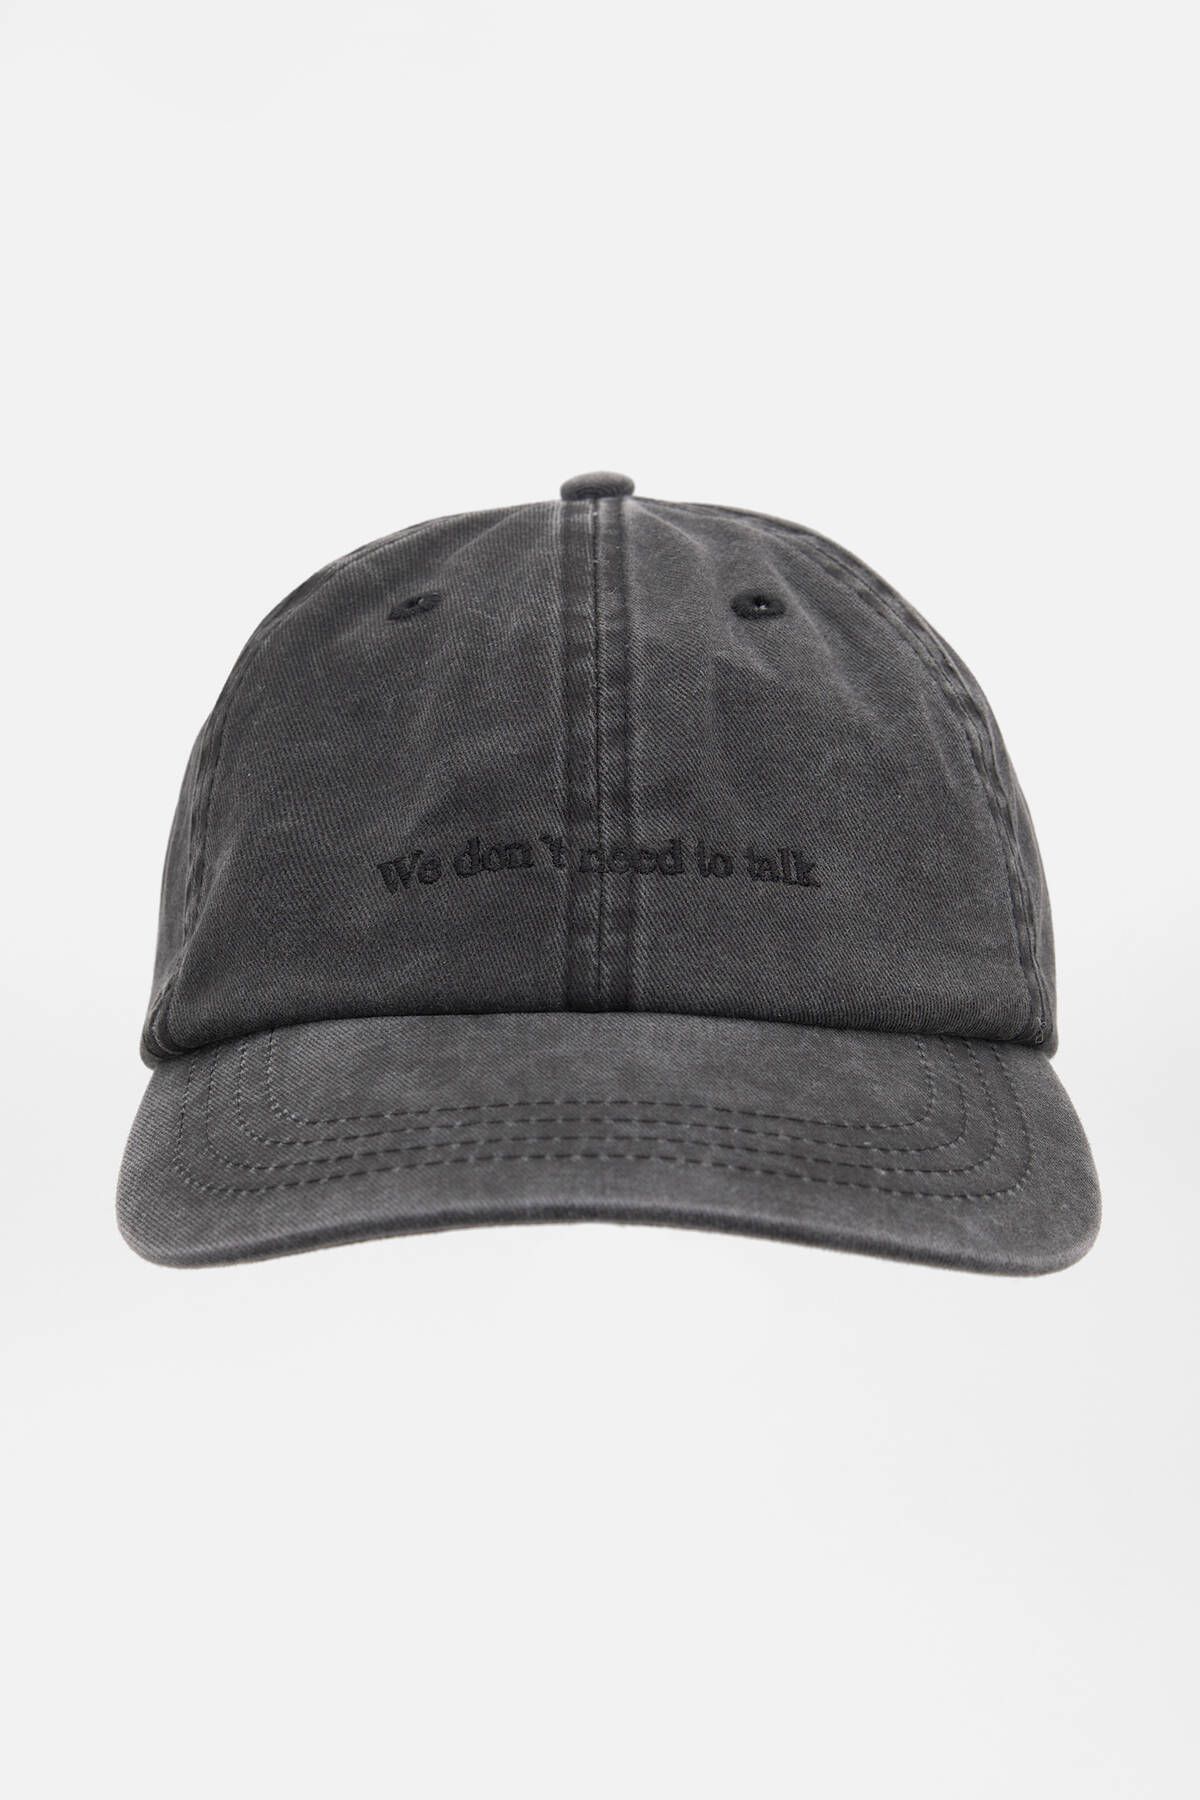 Pull & Bear Soluk efektli ve işlemeli siyah şapka